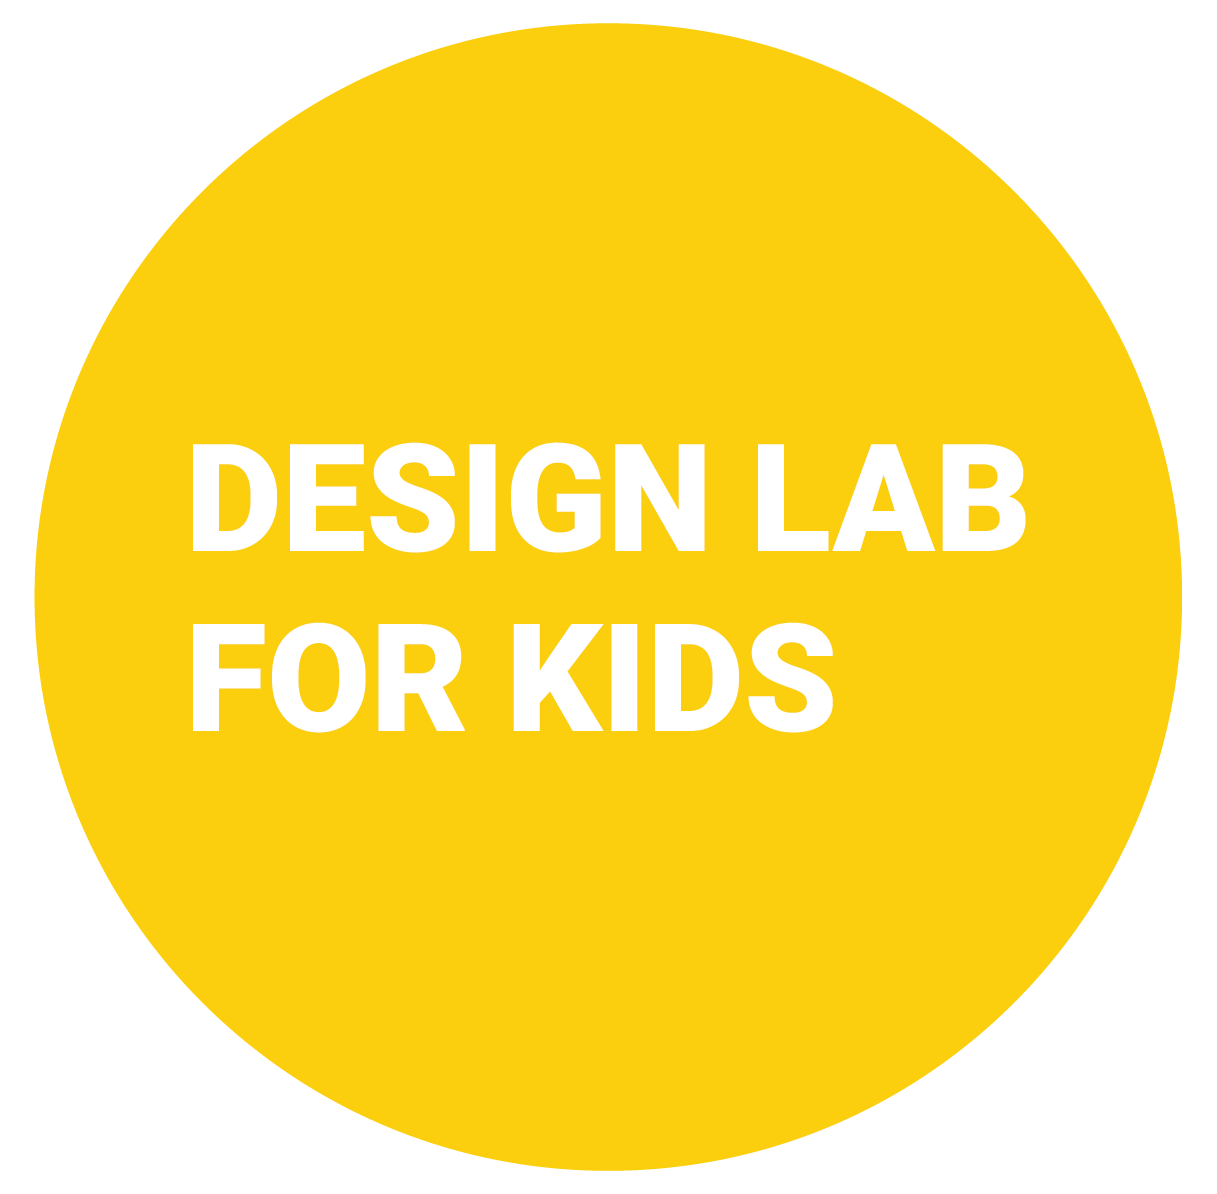 Design Lab for Kids